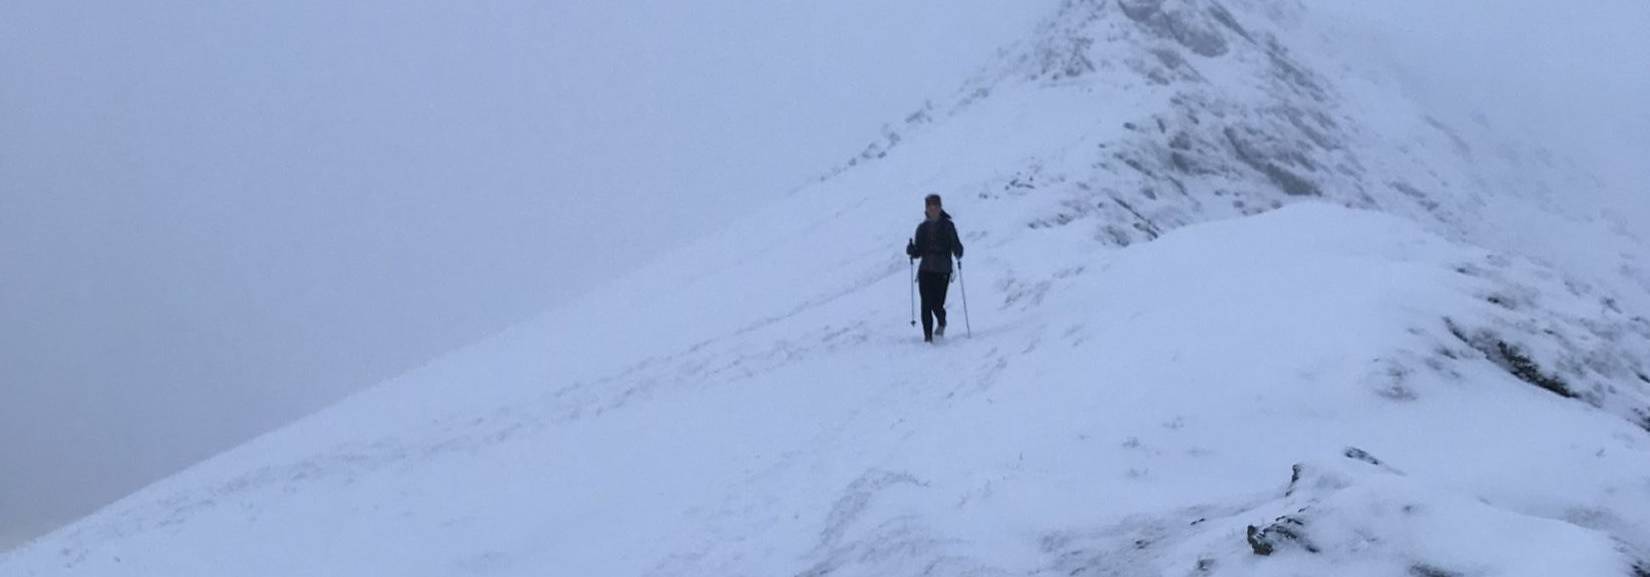 Runner descending Elidir Fawr in the snow